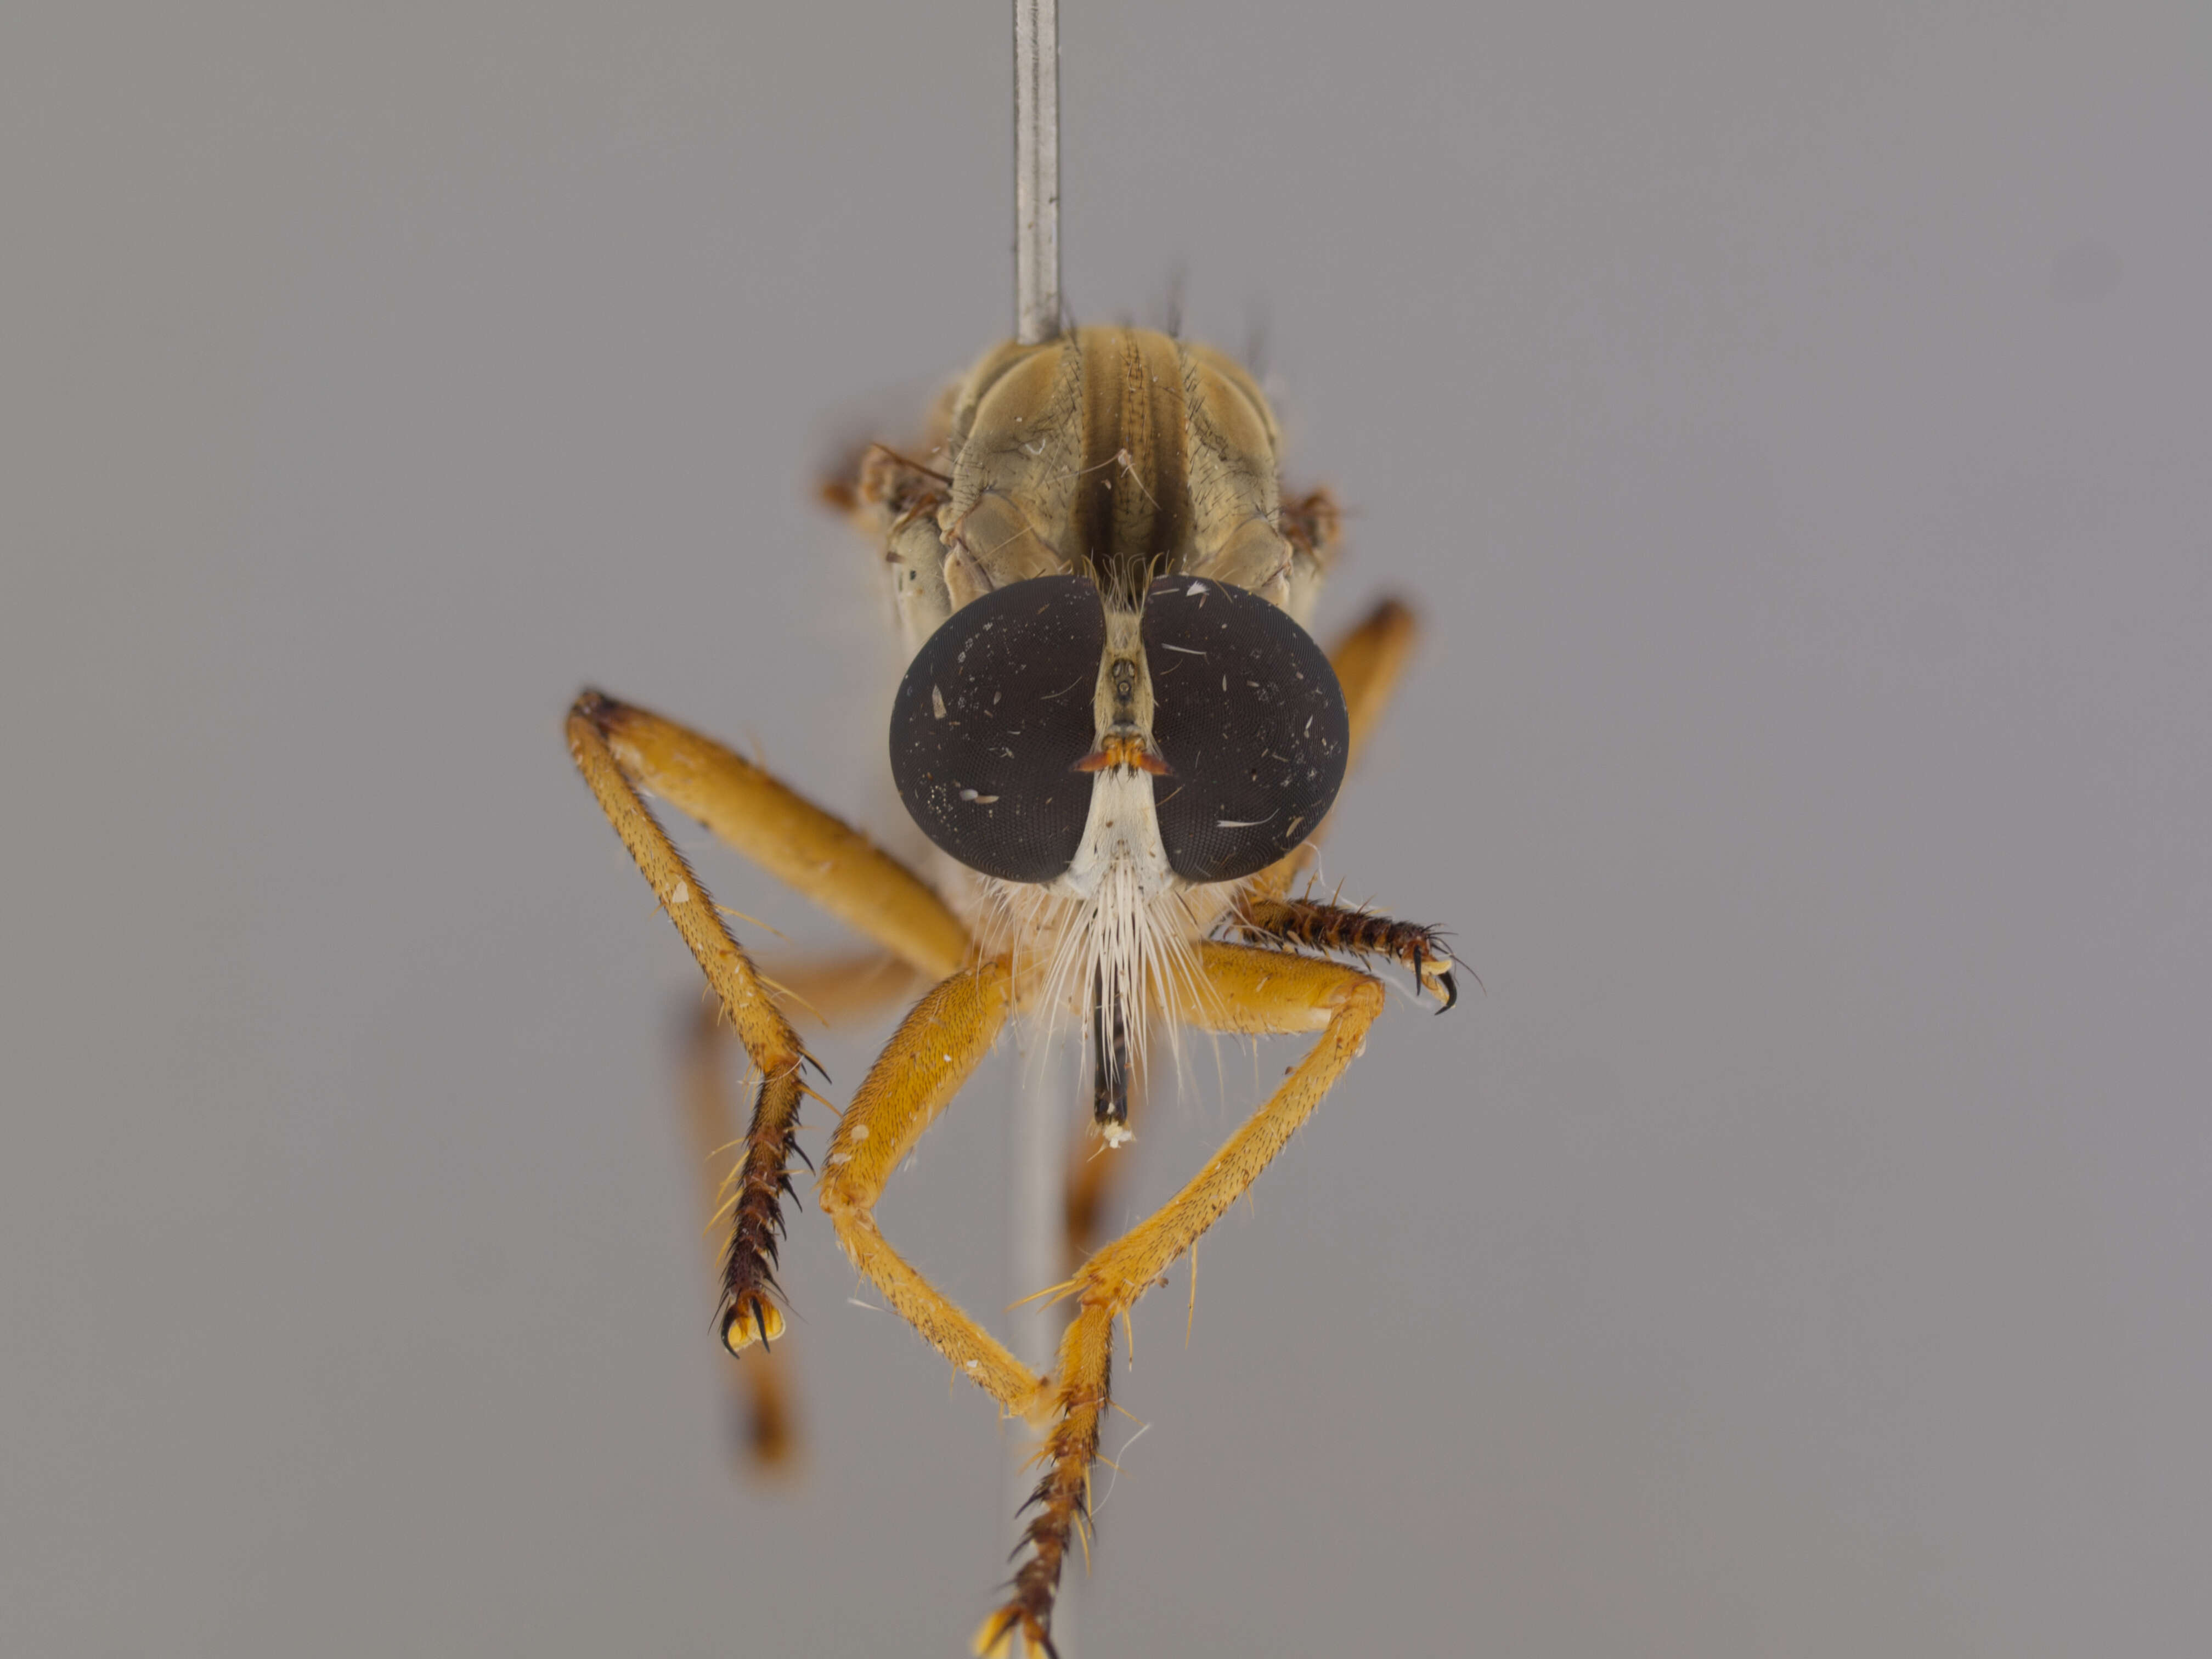 Image of Orophotus pilosus Scarbrough 2004